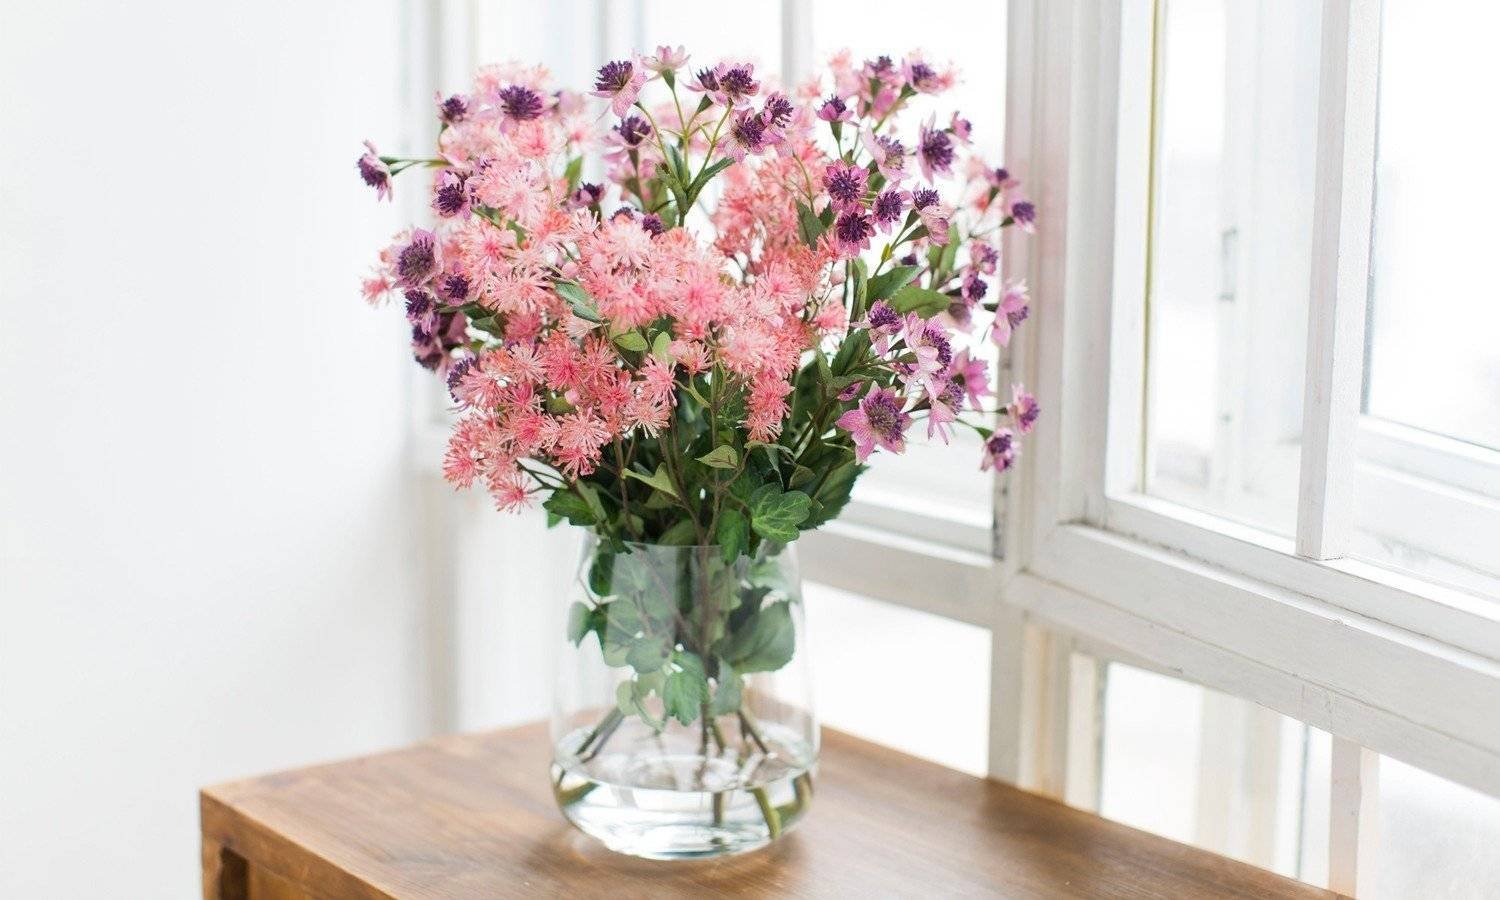 Цветы долго сохраняющиеся. Долгостоящие цветы для букетов. Цветы в вазе. Красивый букет в вазе. Цветы в прозрачной вазе.